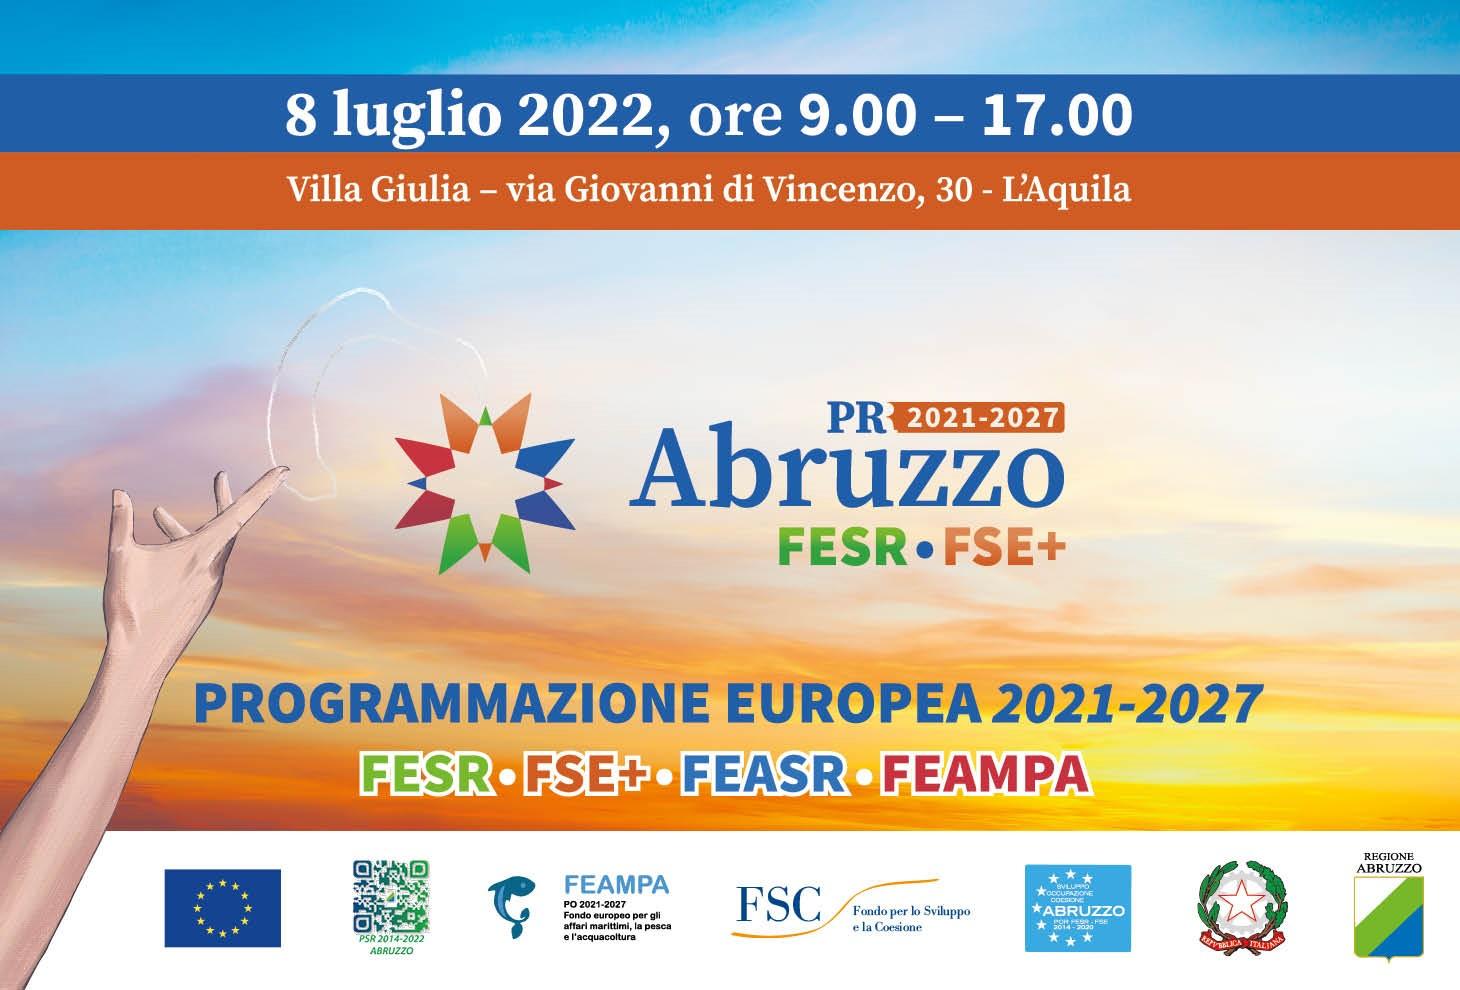 Presentazione della Programmazione europea 2021-2027  FESR - FSE+ - FEASR - FEAMPA  8 luglio 2022, ore 9.00 - 17.00  Villa Giulia - via Giovanni di Vincenzo, 30 - L’Aquila